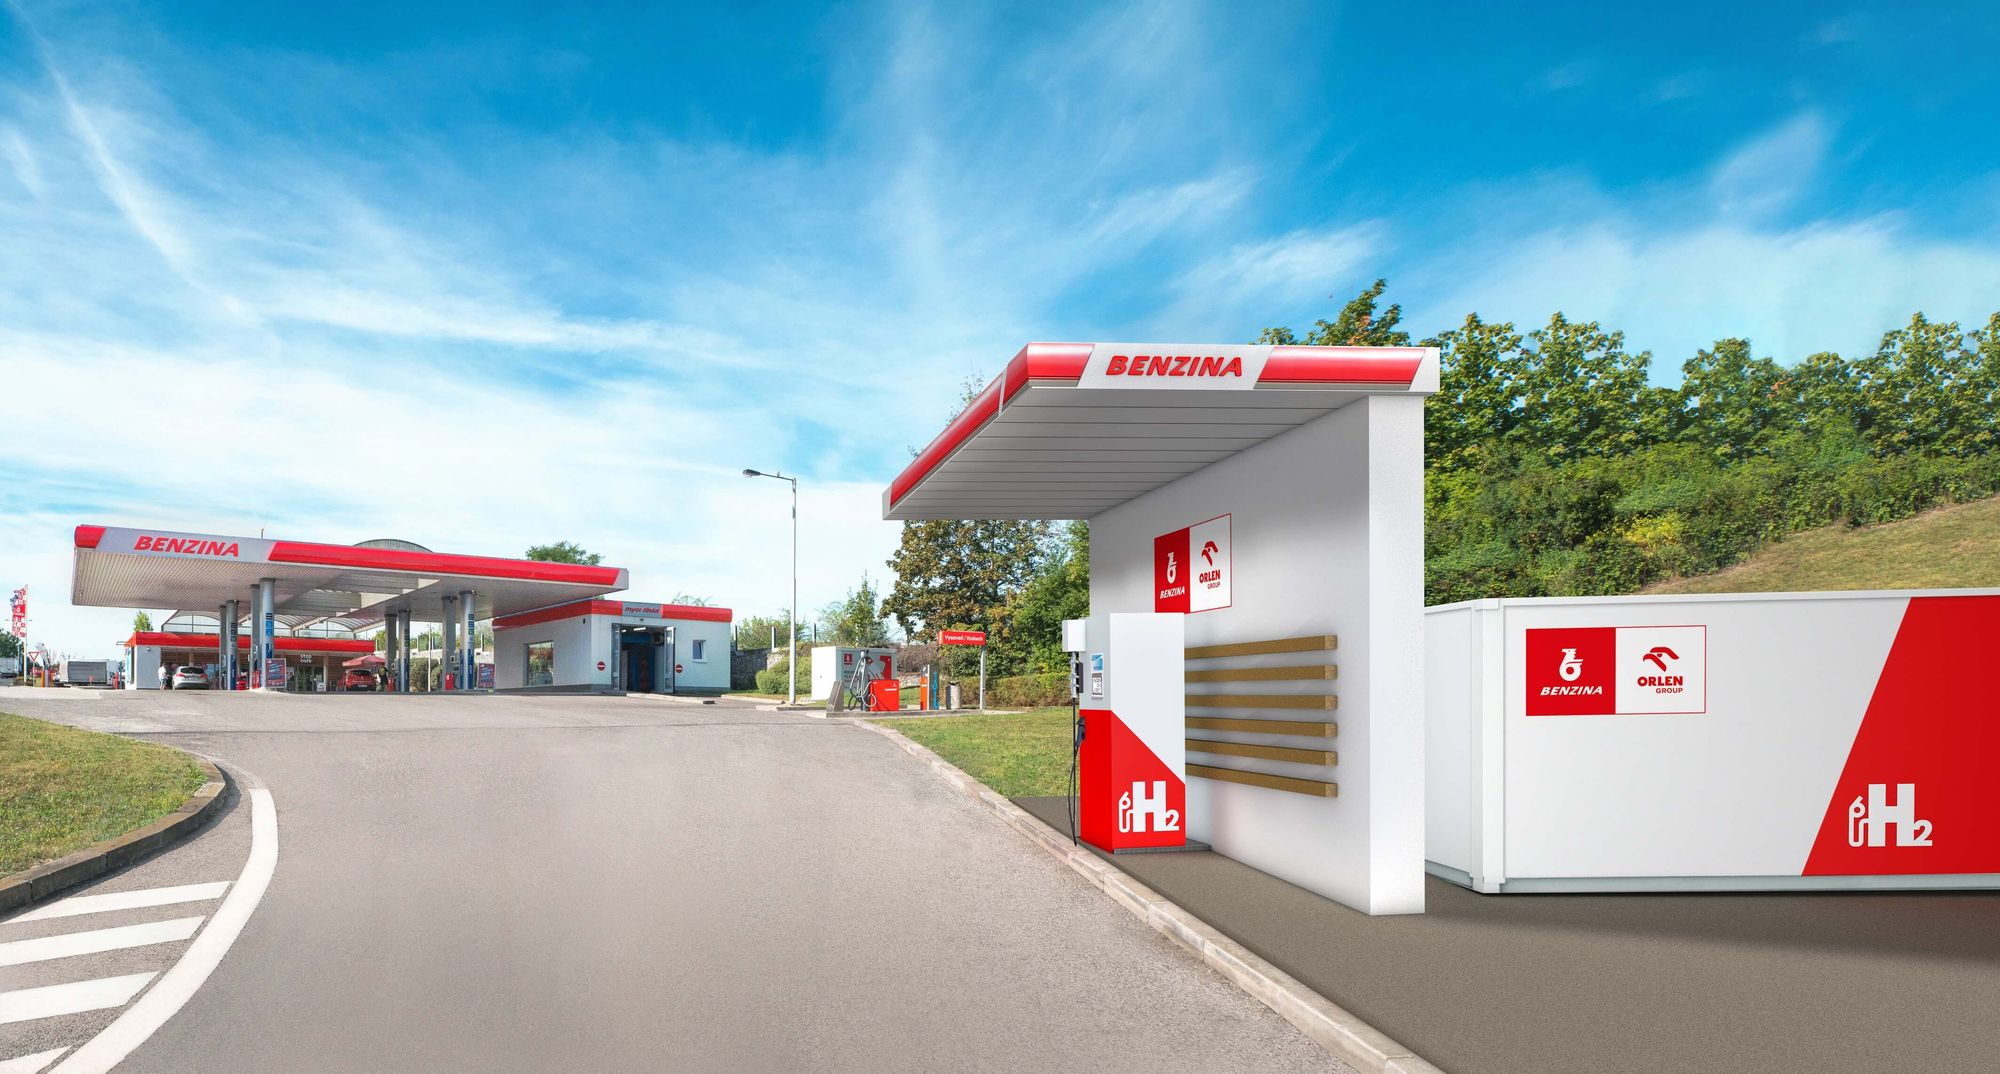 Строительство первых общественных водородных станций в Чехии начнется в 2020 году на существующих АЗС Benzina